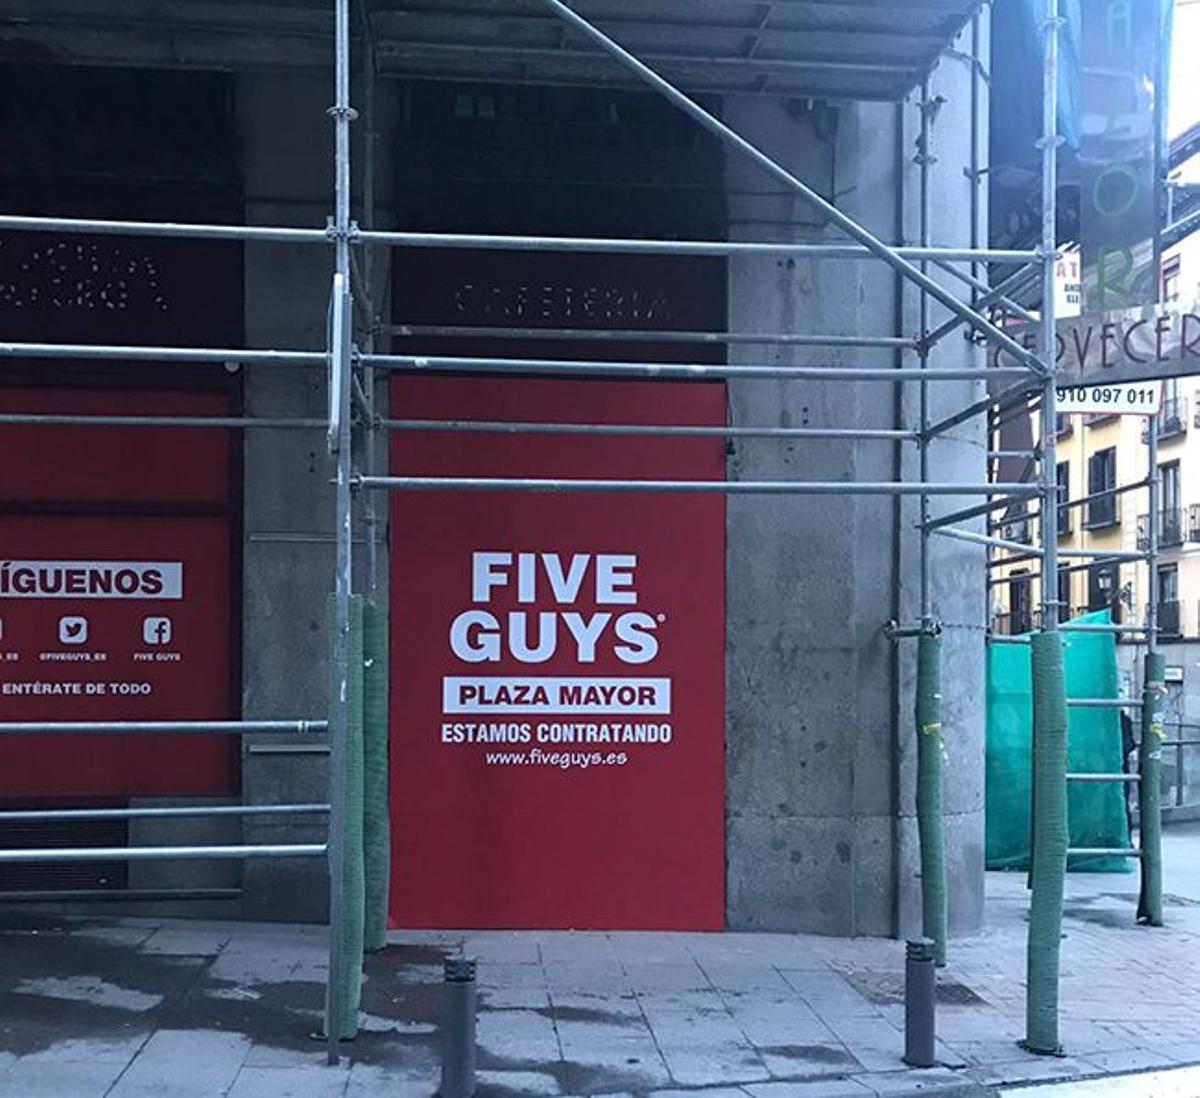 El nuevo local de Five Guys en Madrid